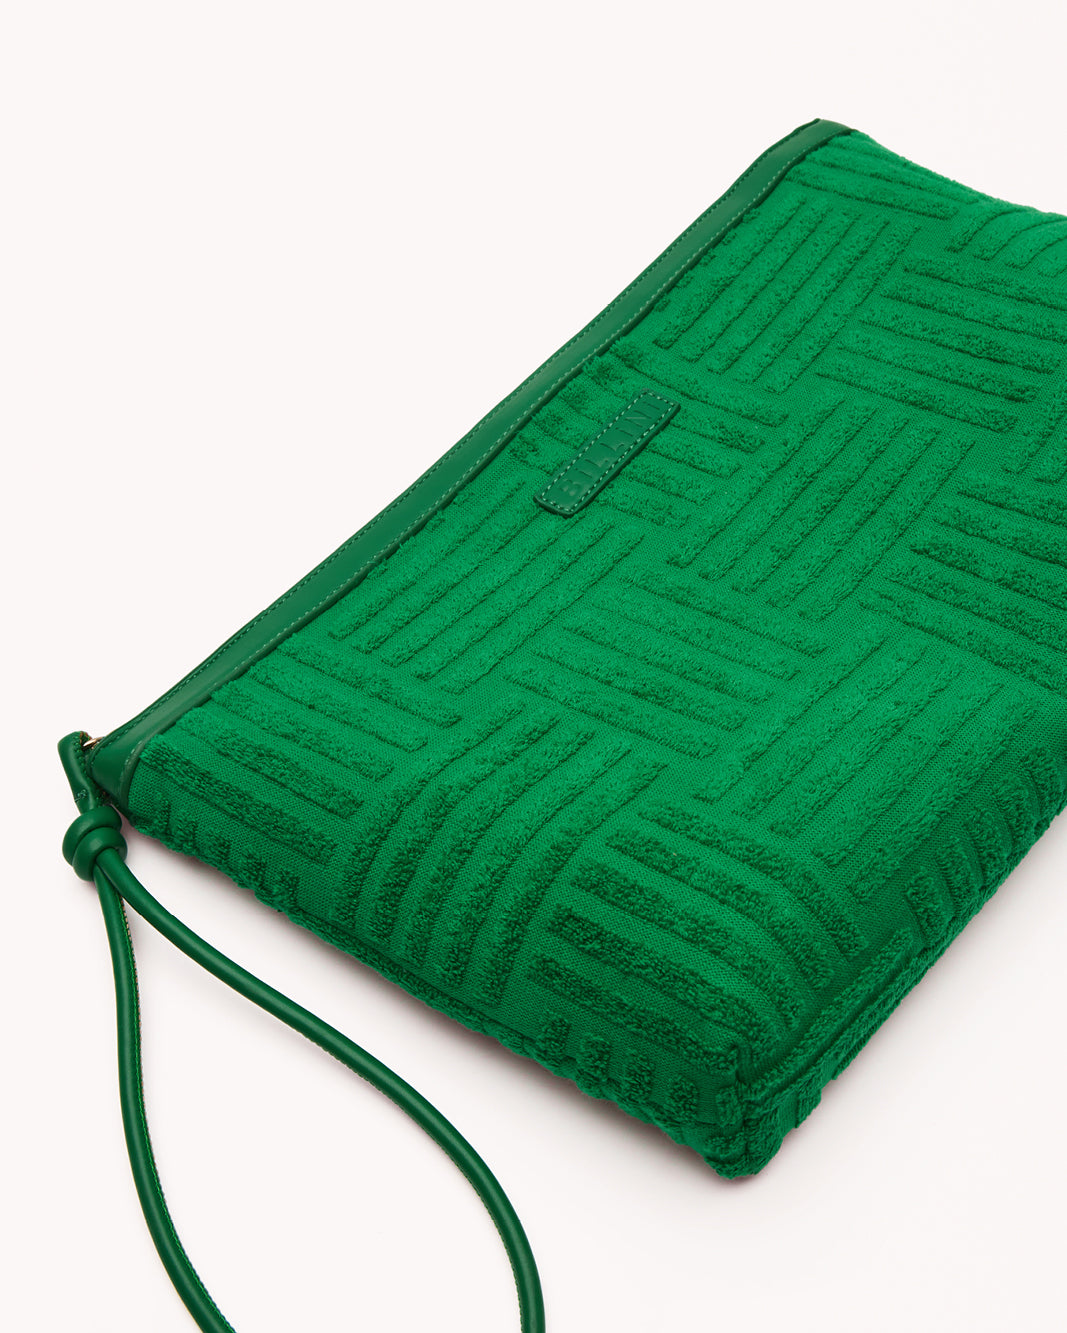 HOLLY CLUTCH BAG - GREEN TERRY-Handbags-Billini-O/S-Billini